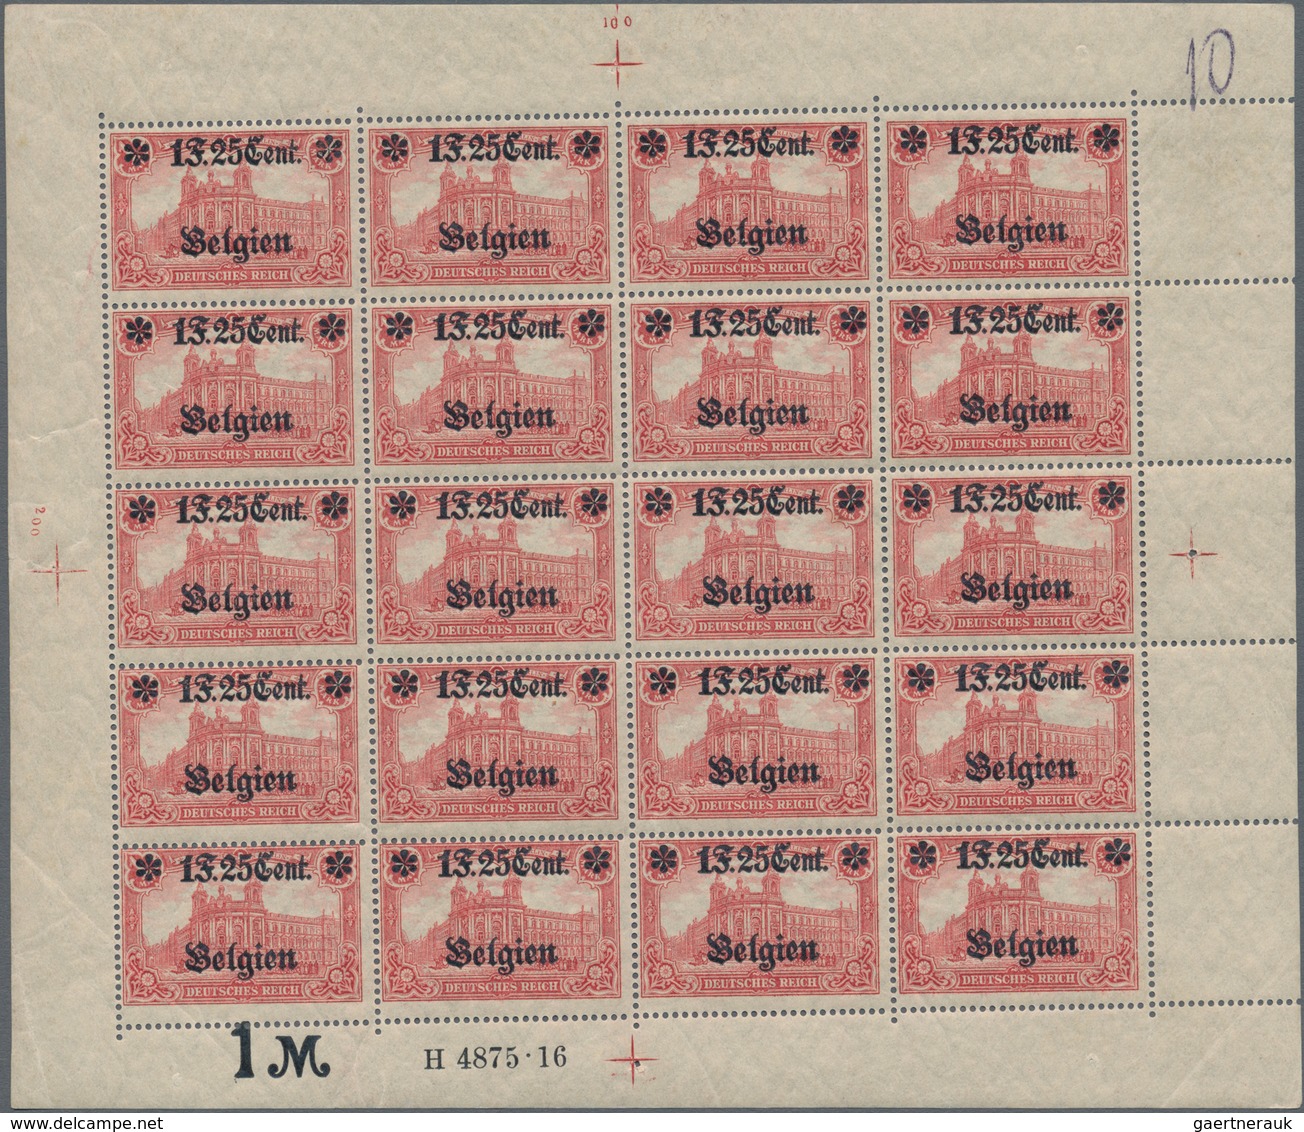 Deutsche Besetzung I. WK: Landespost In Belgien: 1916, 1 F. 25 Cent Auf 1 Mark Karminrot, Wertangabe - Besetzungen 1914-18